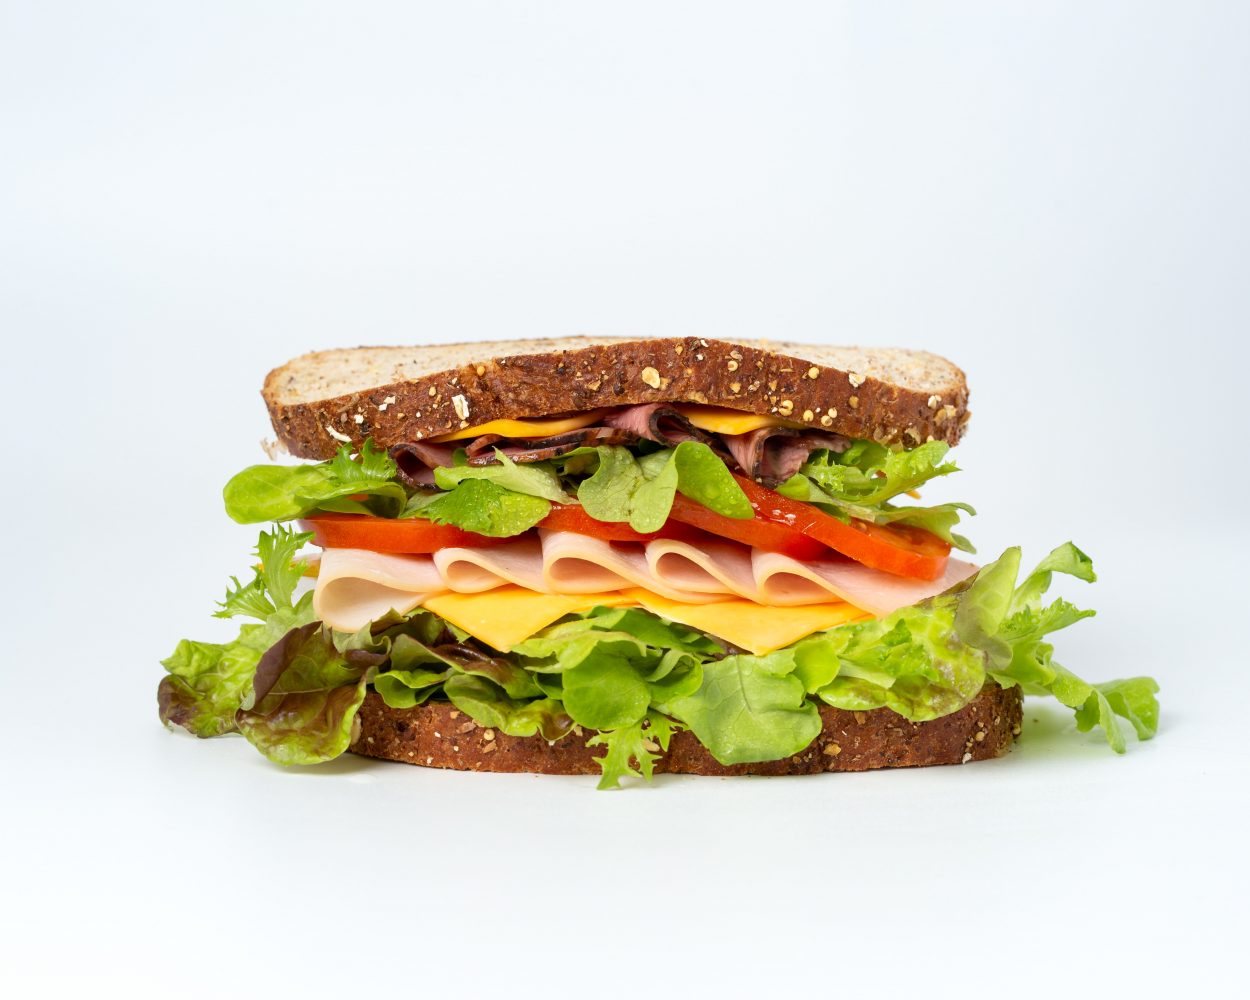 Descubra como utilizar bem o feedback sanduíche